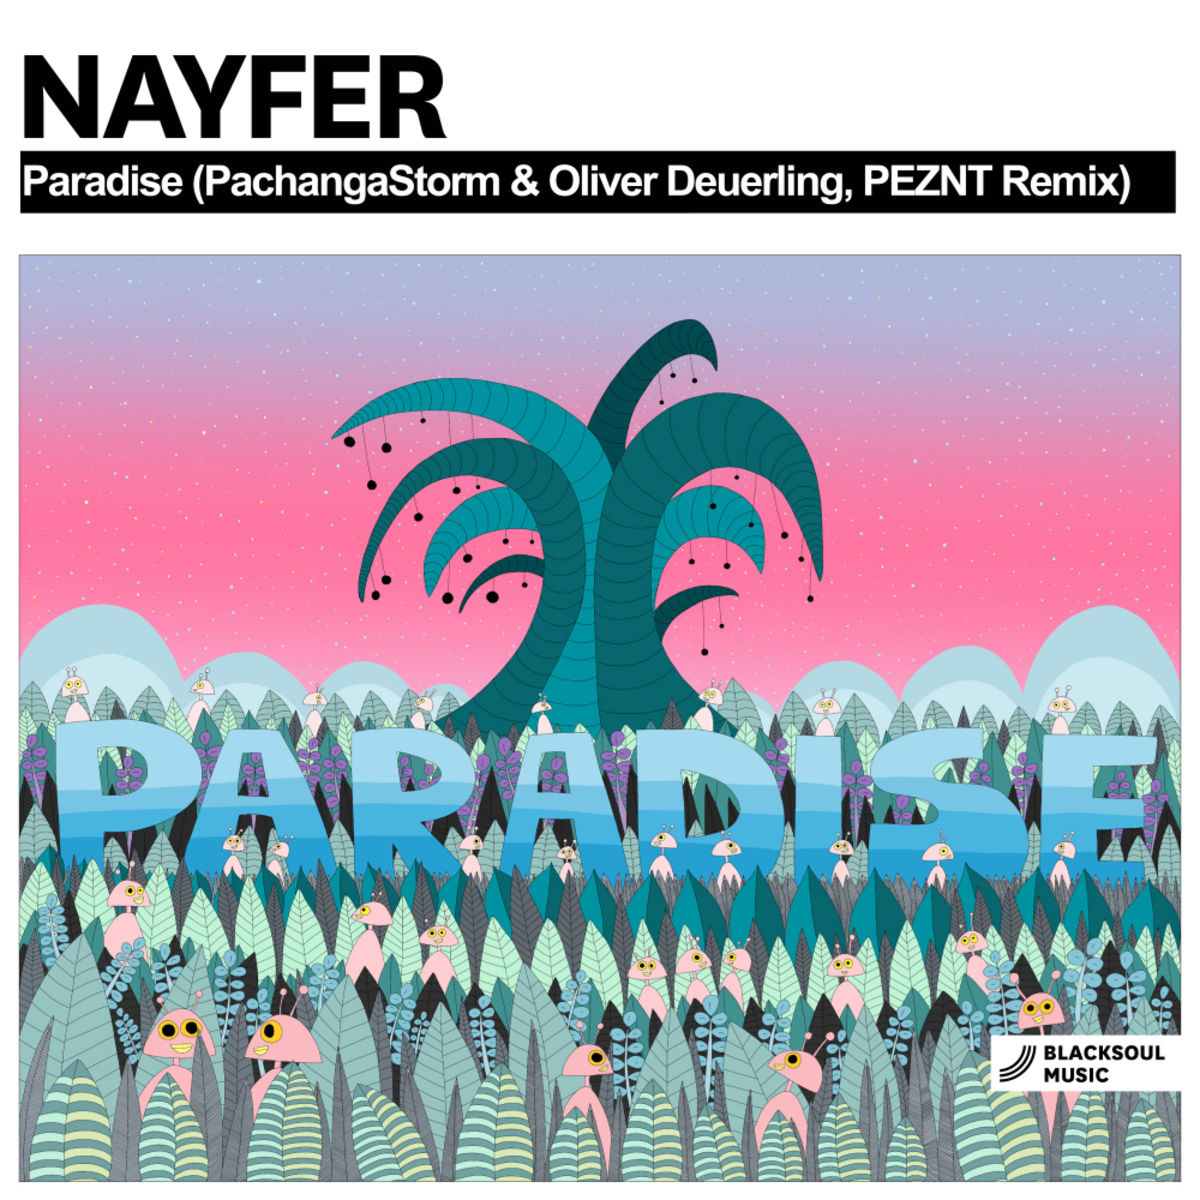 Nayfer - Paradise / Blacksoul Music